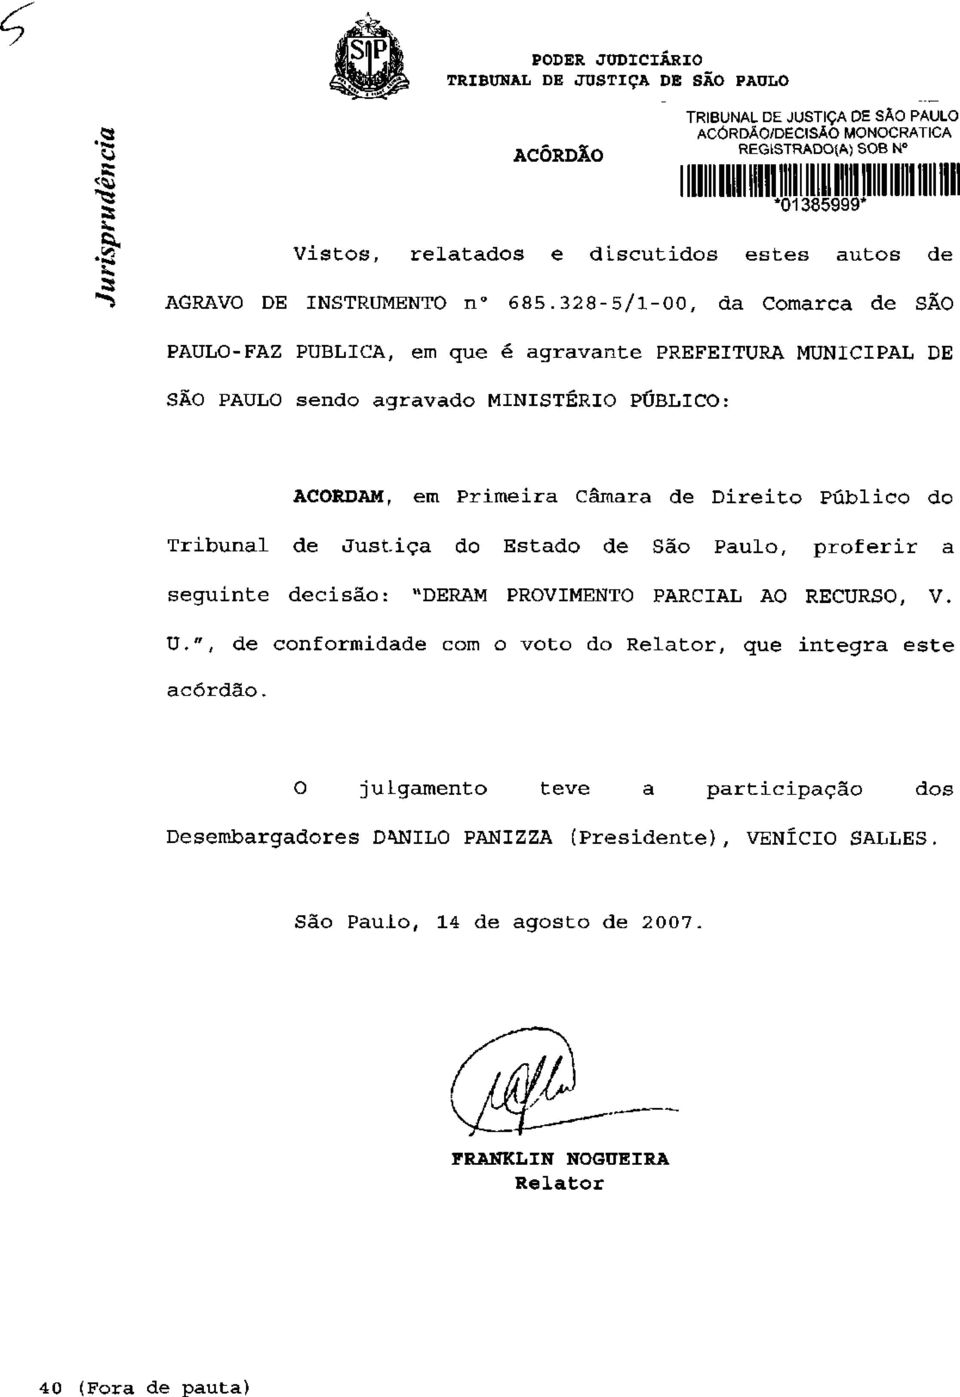 328-5/1-00, da Cornar ca de SÃO PAULO-FAZ PUBLICA, em que é agravante PREFEITURA MUNICIPAL DE SÃO PAULO sendo agravado MINISTÉRIO PÚBLICO: ACORDAM, em Primeira Câmara de Direito Público do